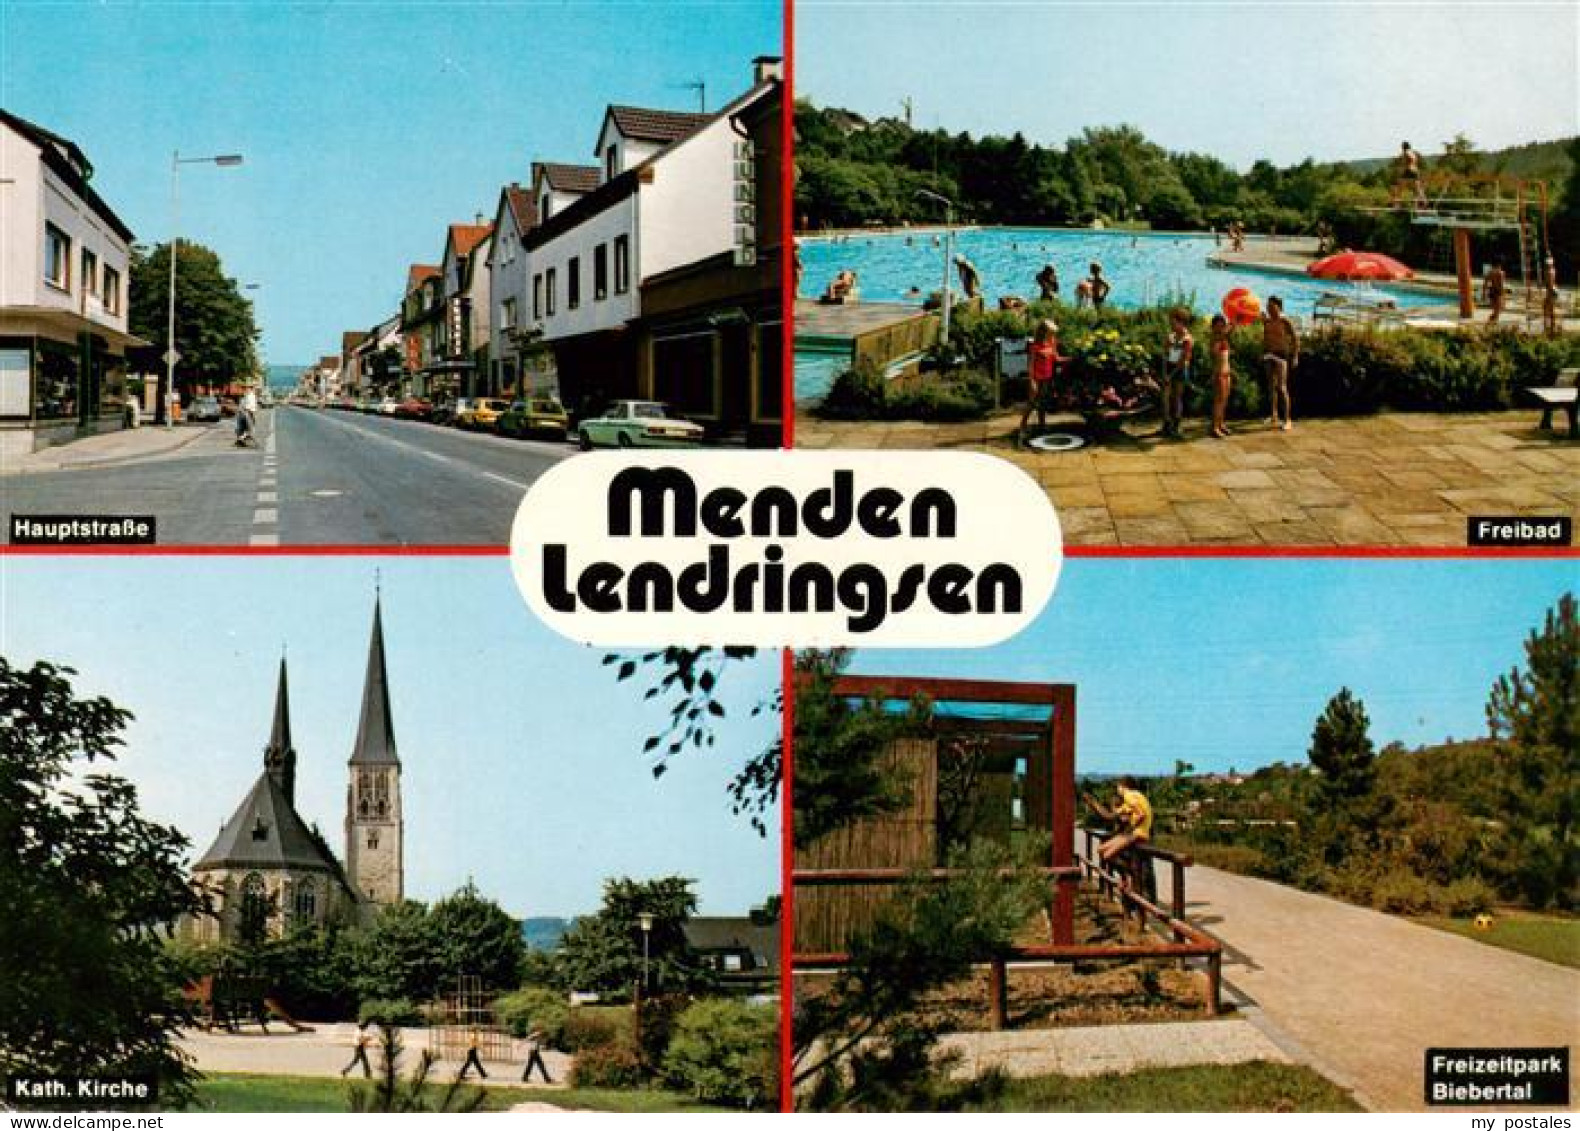 73943395 Lendringsen_Sauerland Hauptstrasse Freibad Kath Kirche Freizeitpark Bie - Menden